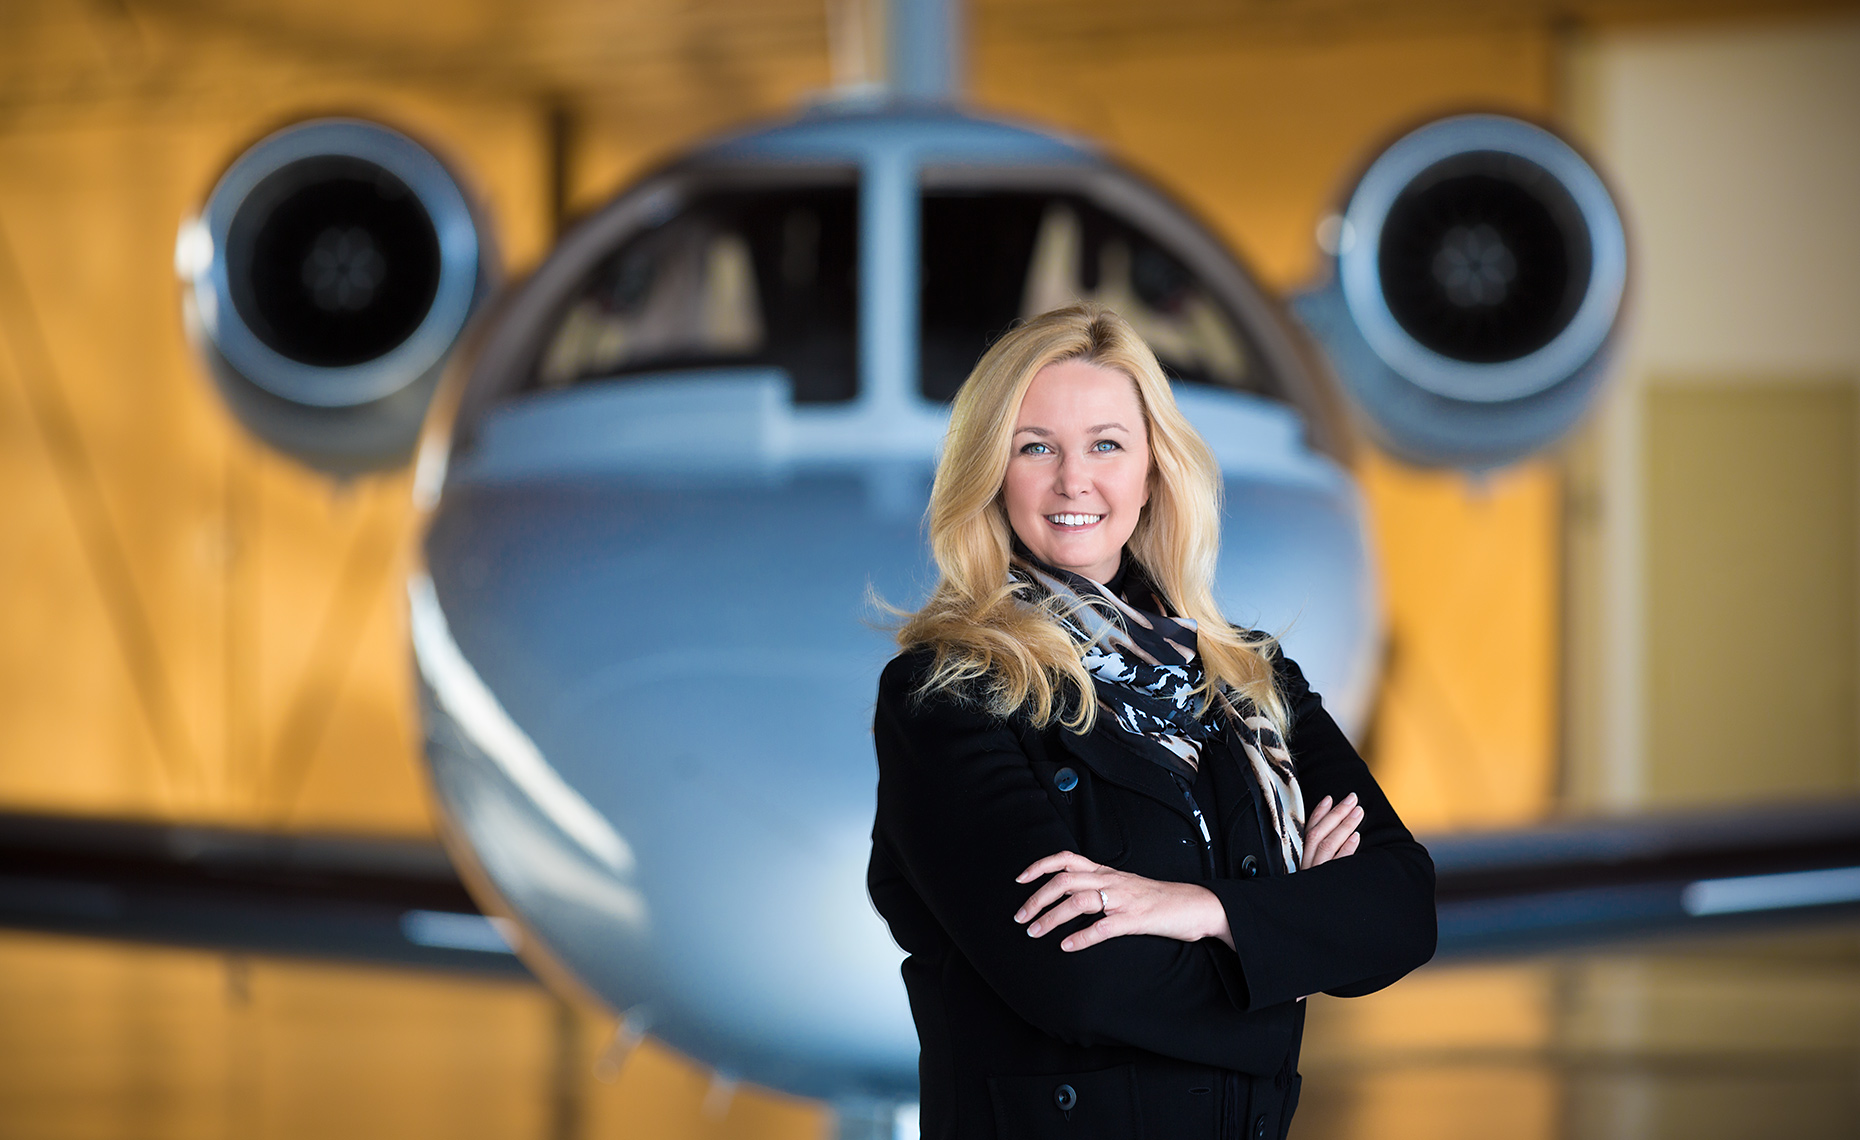 Desert Jets CEO Denise Wilson